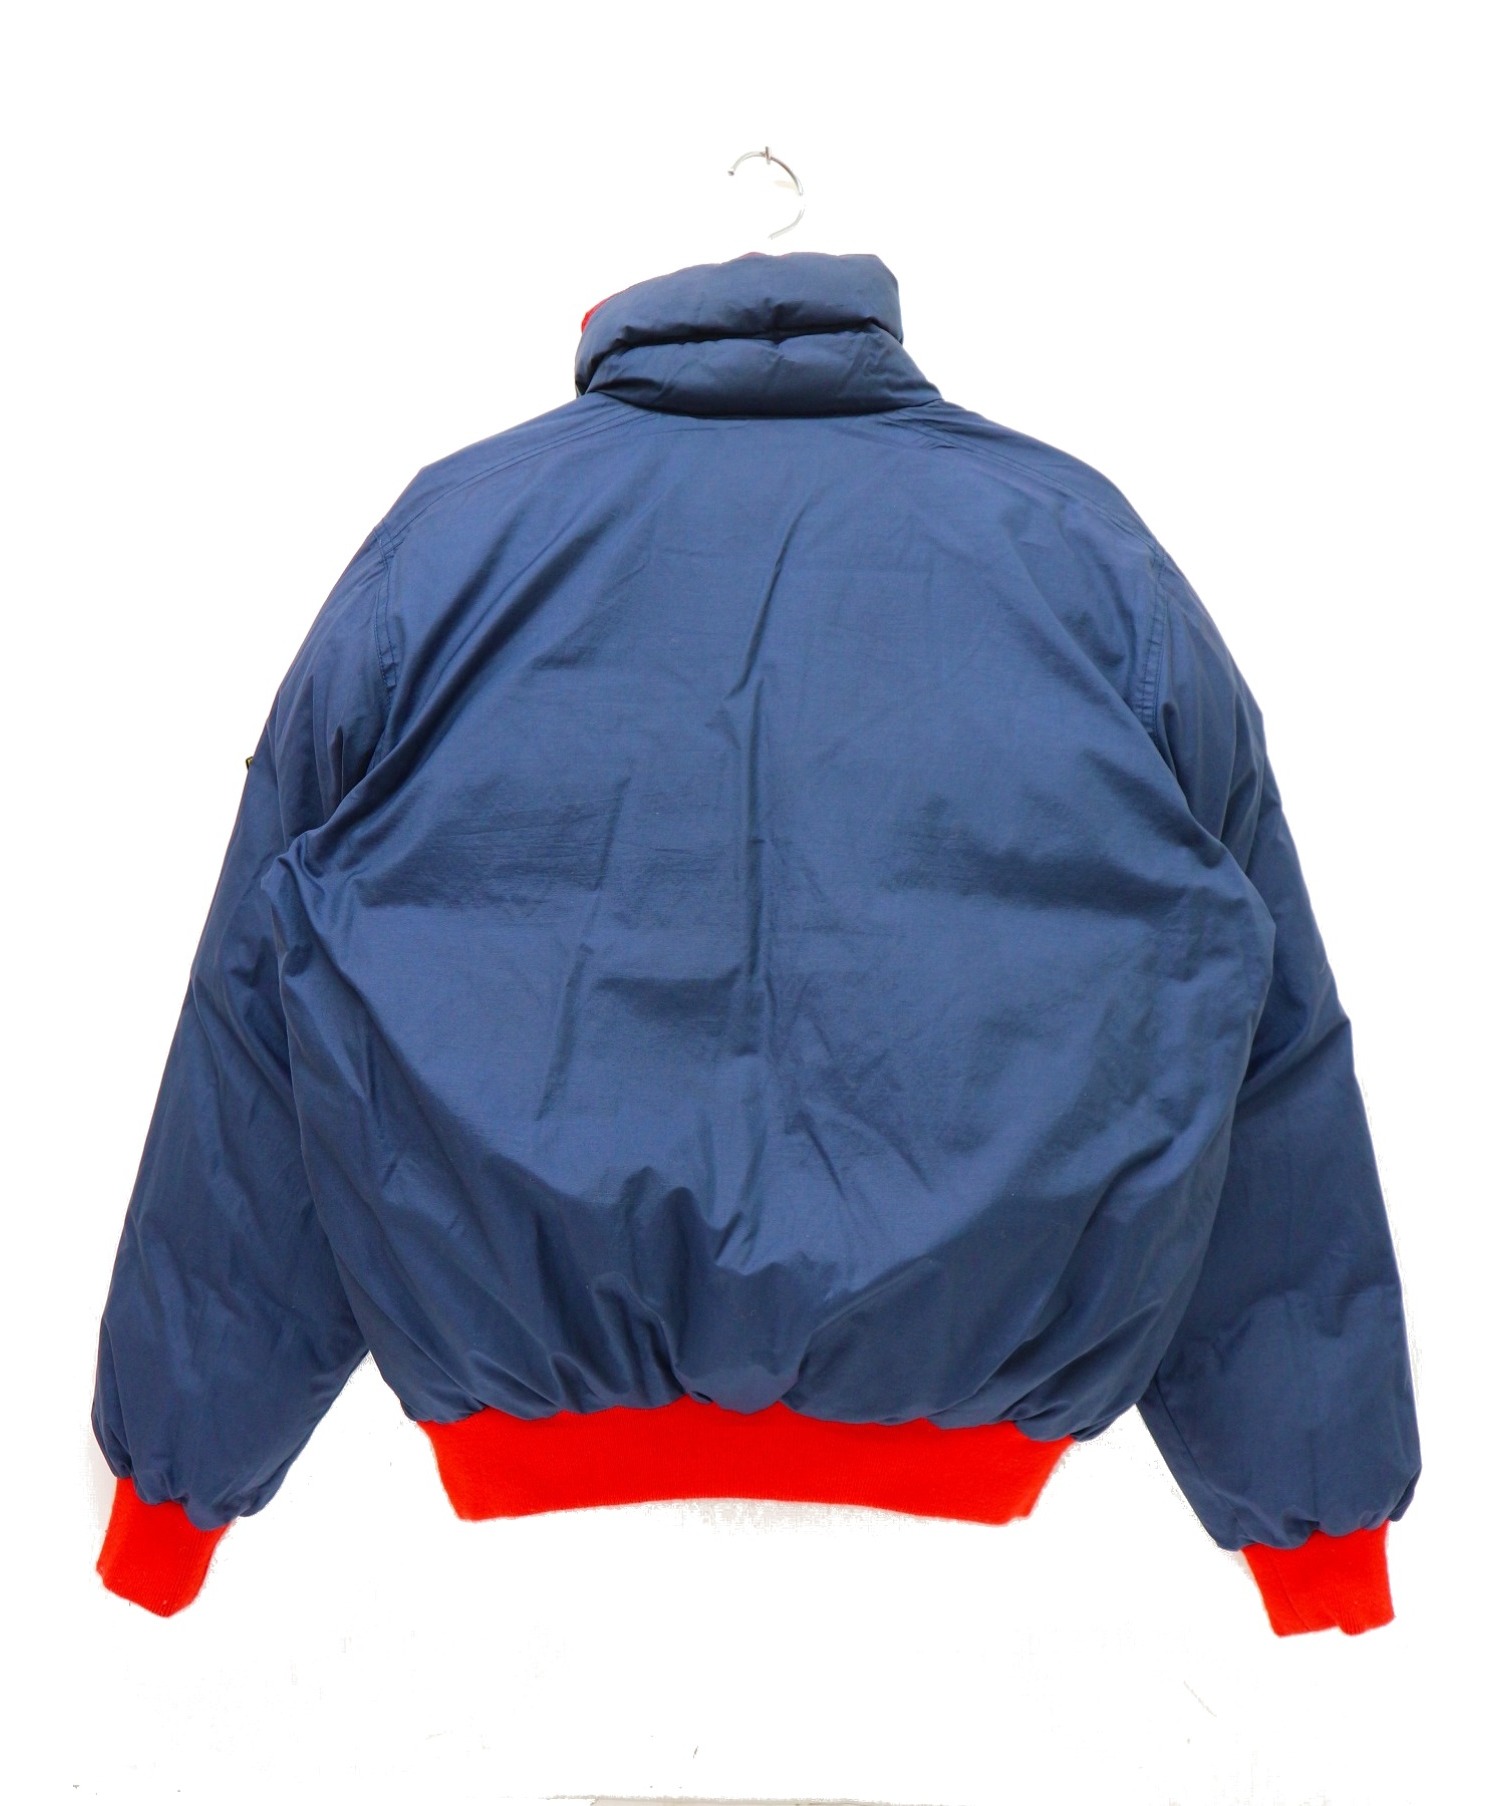 MONCLER (モンクレール) リバーシブルダウンジャケット レッド×ネイビー サイズ:胸囲 94 / 身長 170 アシックス期